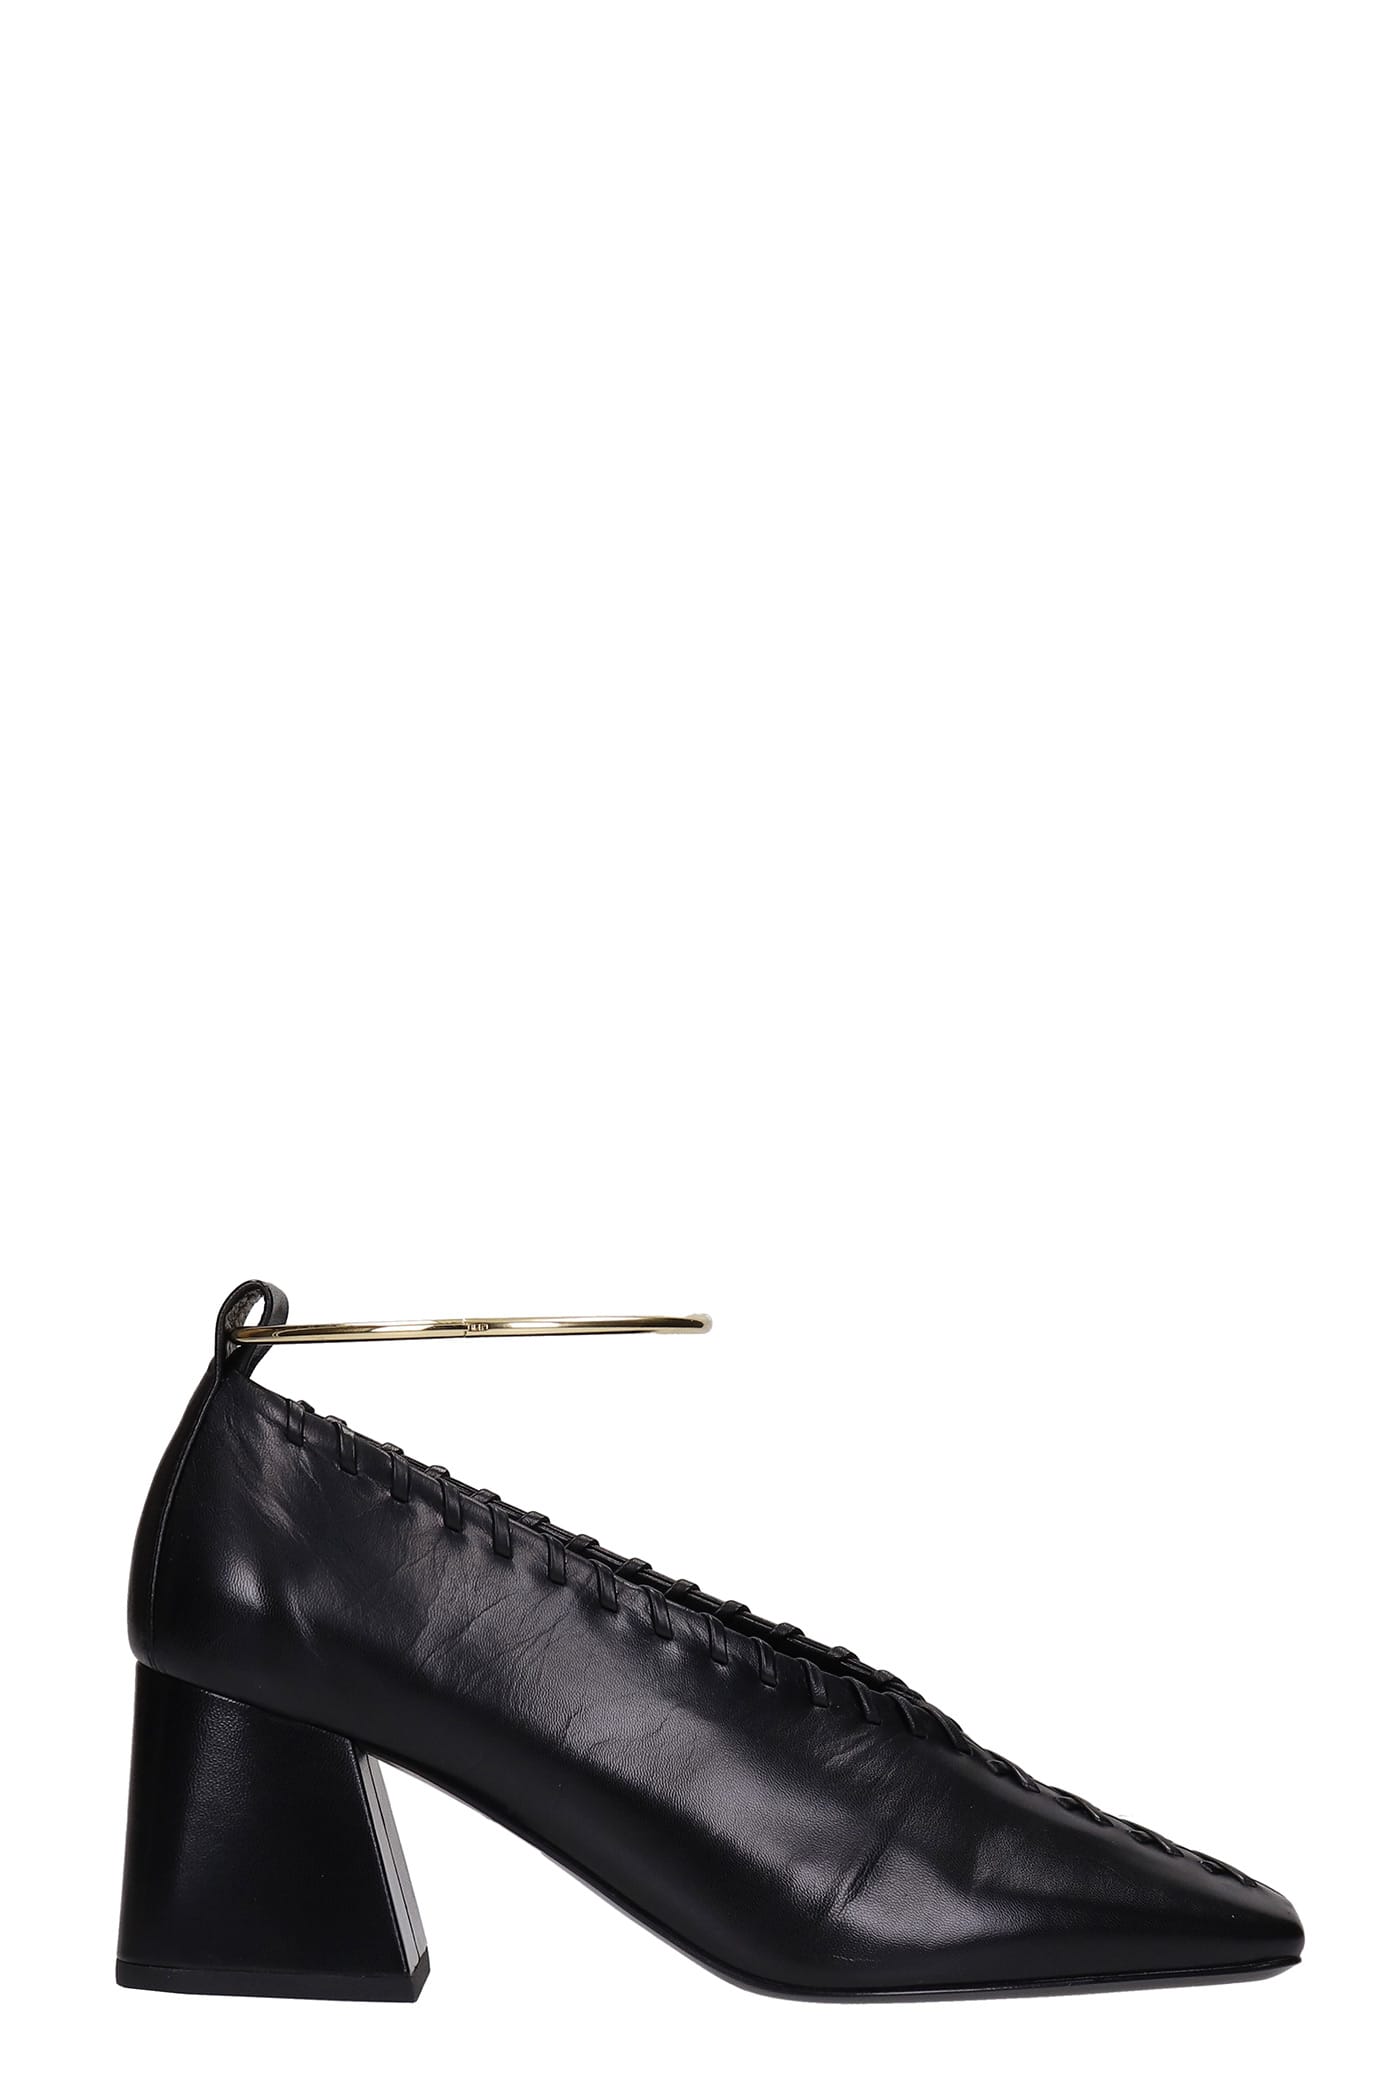 Jil Sander Pumps In Black Leather